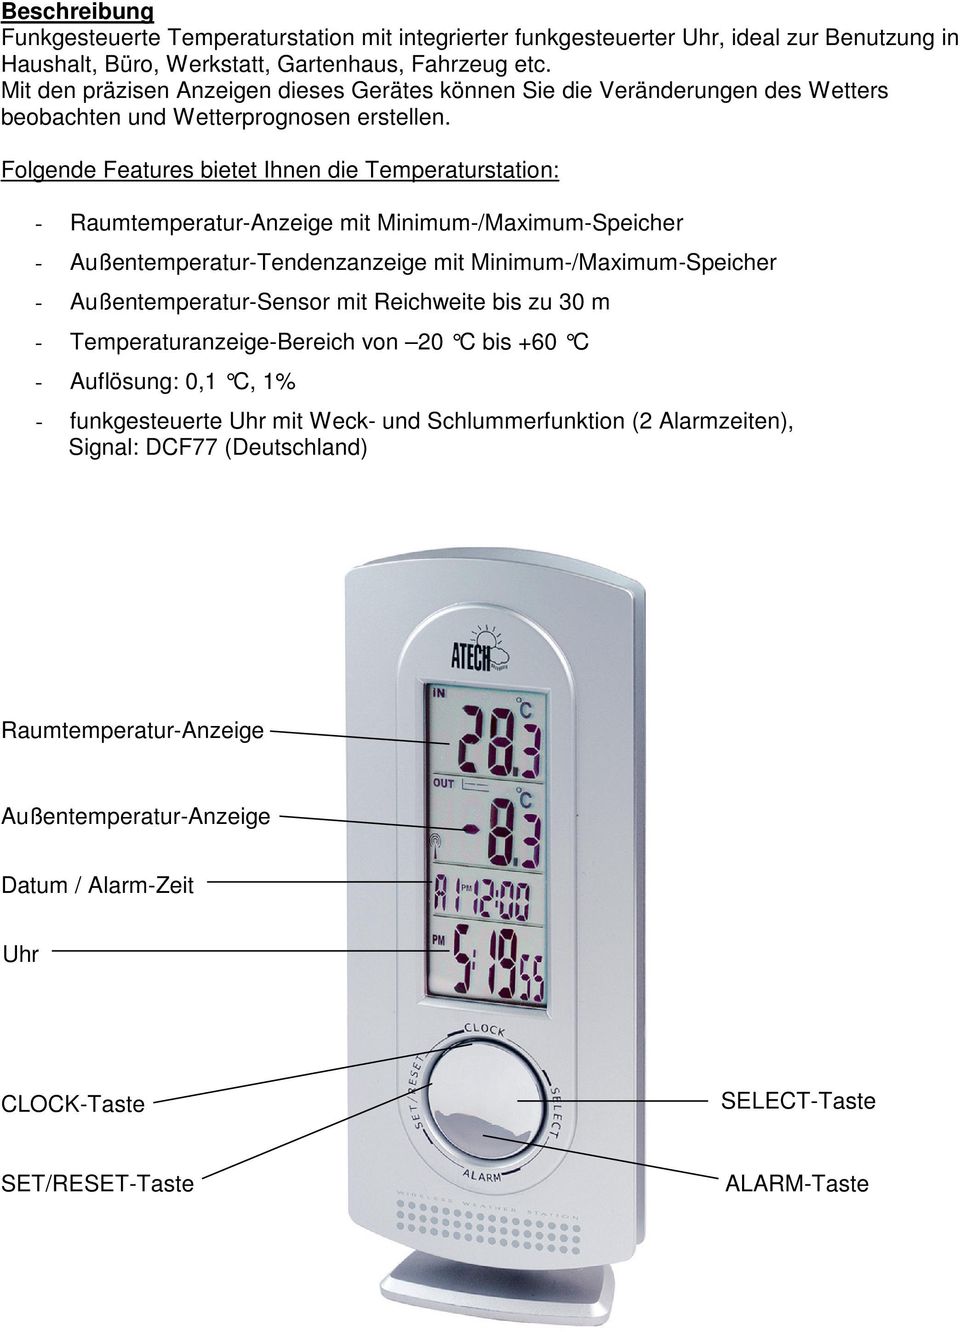 Folgende Features bietet Ihnen die Temperaturstation: - Raumtemperatur-Anzeige mit Minimum-/Maximum-Speicher - Außentemperatur-Tendenzanzeige mit Minimum-/Maximum-Speicher - Außentemperatur-Sensor